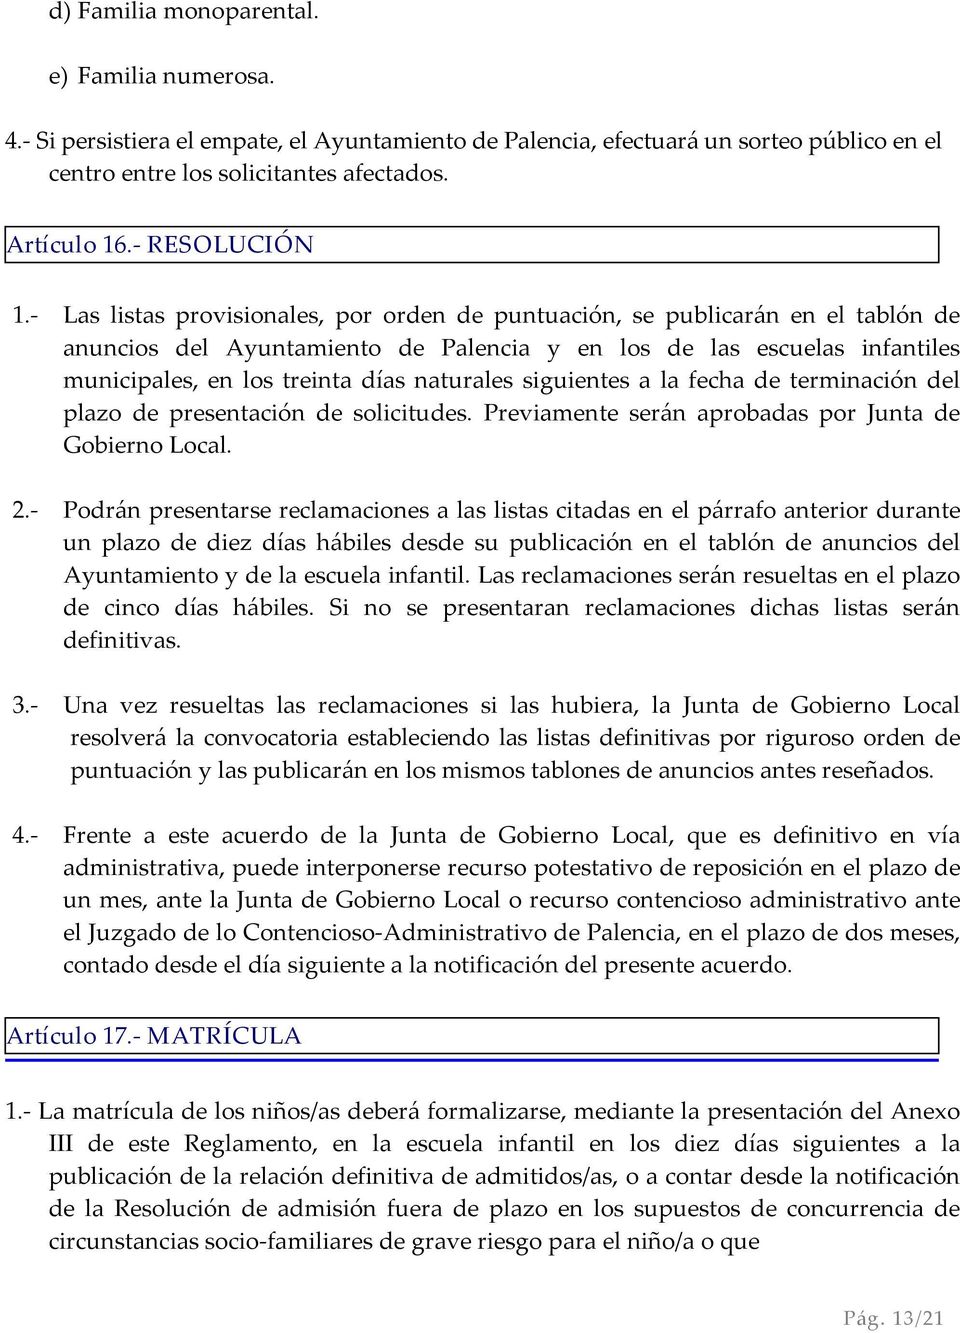 - Las listas provisionales, por orden de puntuación, se publicarán en el tablón de anuncios del Ayuntamiento de Palencia y en los de las escuelas infantiles municipales, en los treinta días naturales